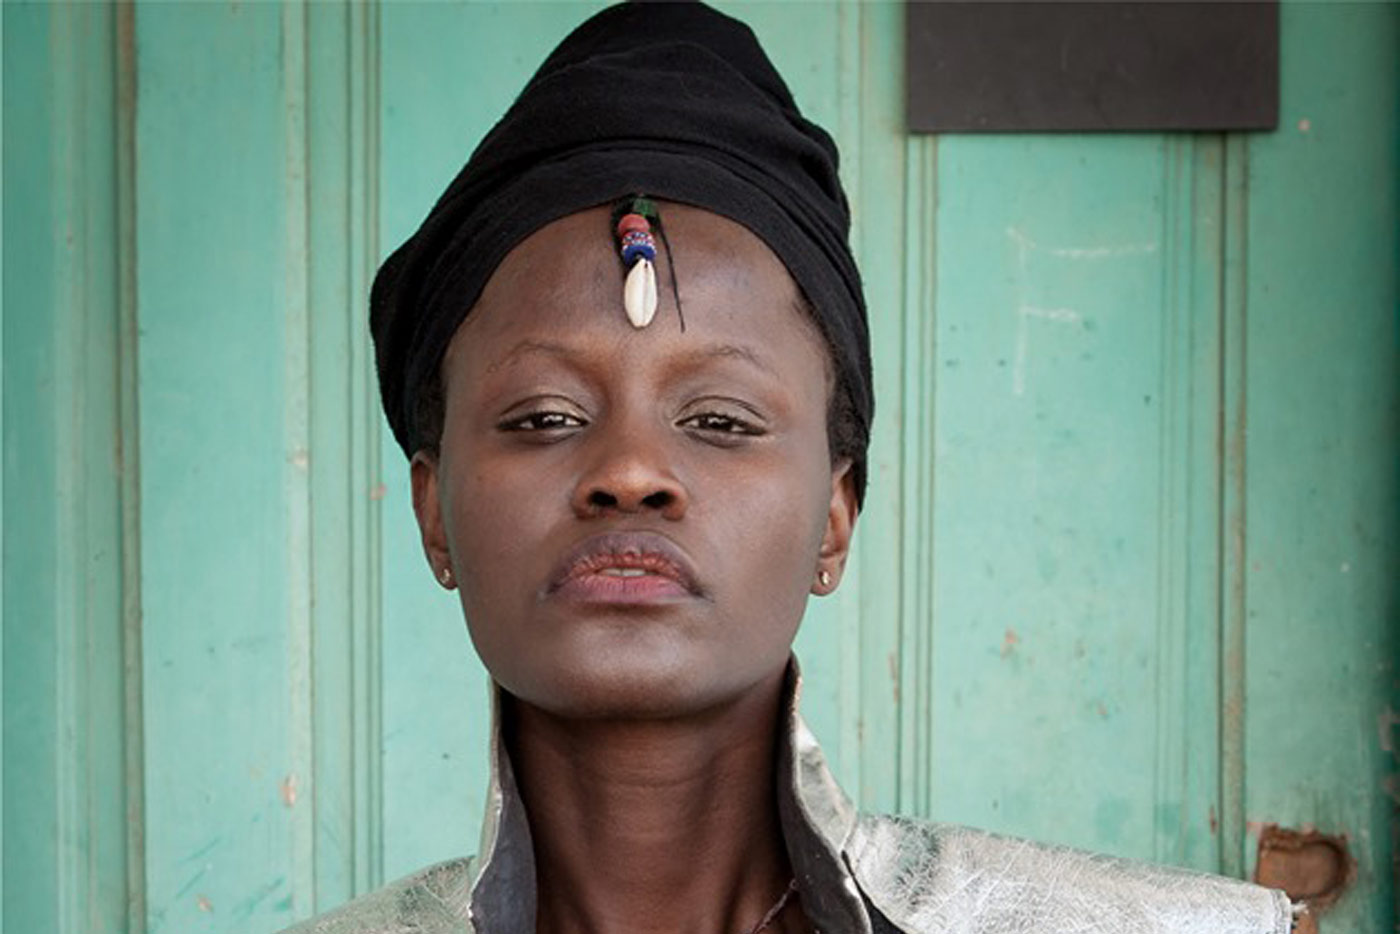 Fakeba lanza "Dakar", el primer adelanto de su nuevo disco